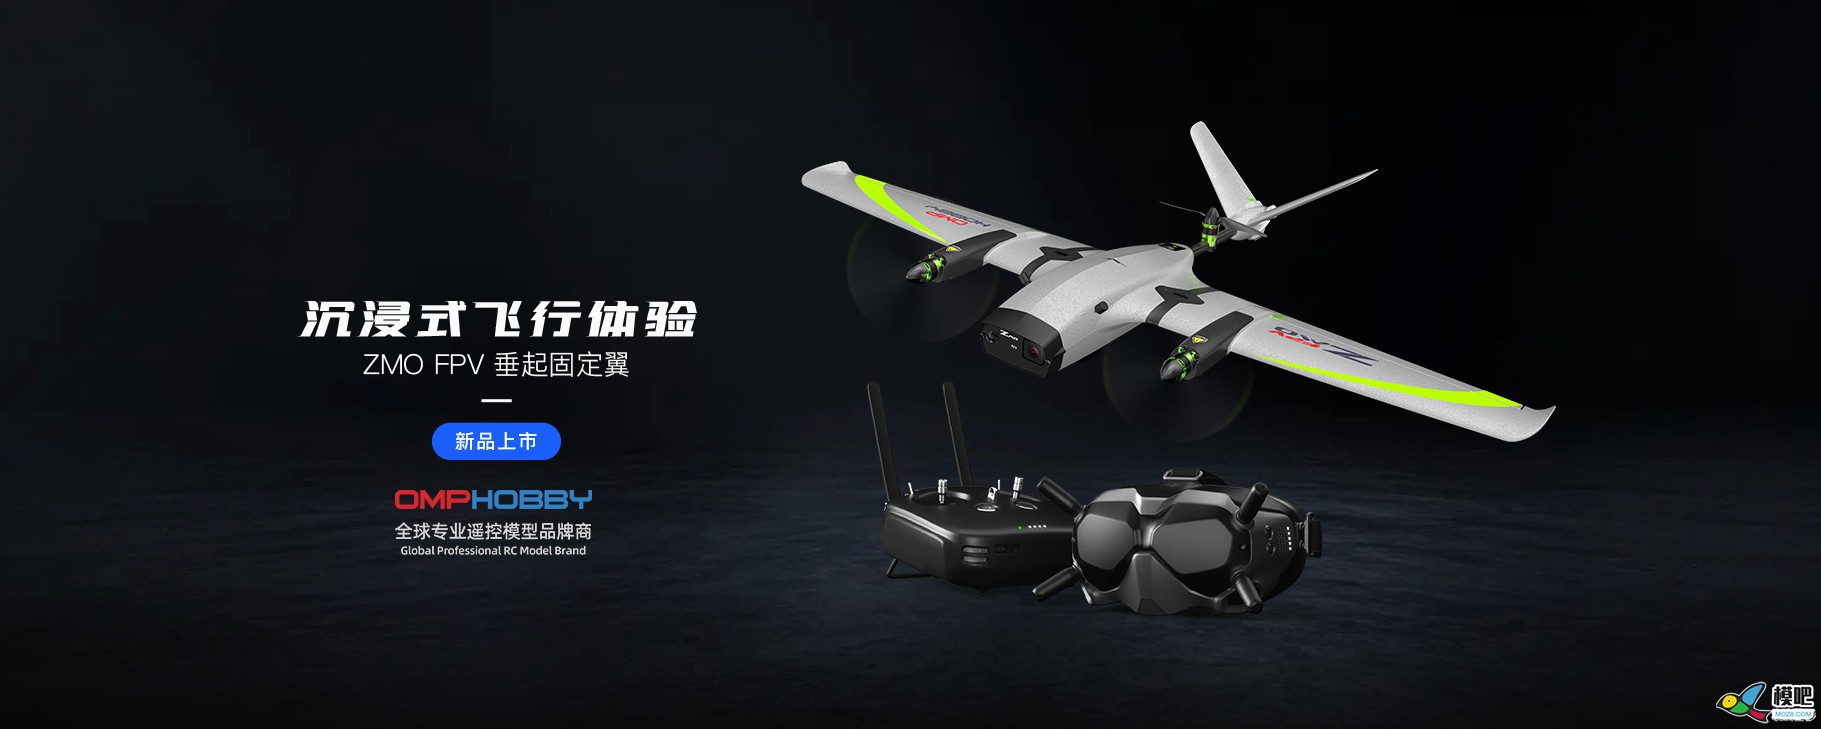 潮玩无人机-垂起固定翼FPV【ZMO】| 全新发售 无人机,航模,固定翼,飞手,飞行体验 作者:边锋领域 8899 